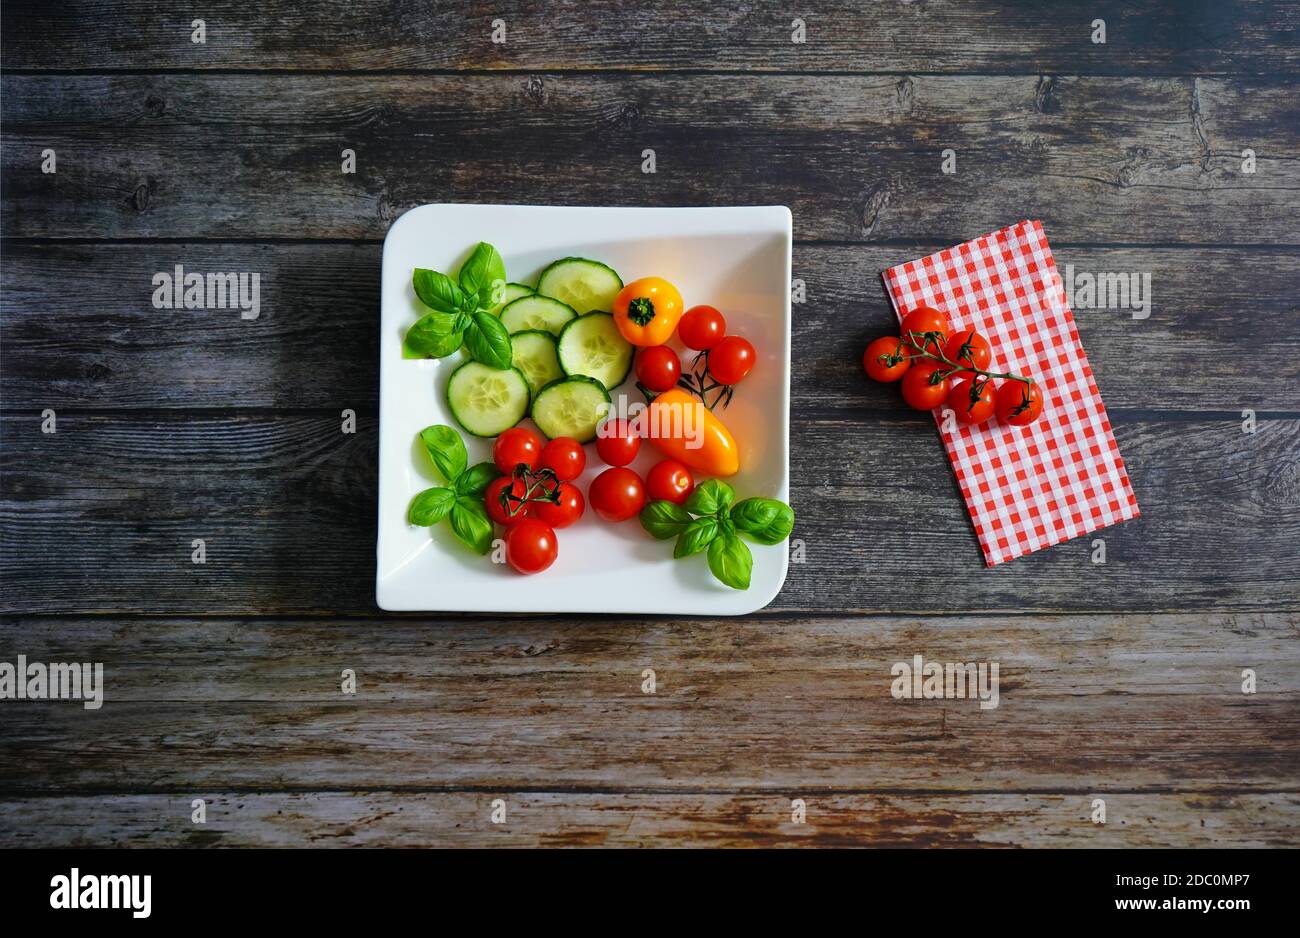 Frische Zutaten für einen gesunden Salat auf einem weißen quadratischen Teller: Tomaten, Paprika, Zucchini und Basilikum. Dunkler Holzhintergrund mit karierter Serviette. Stockfoto